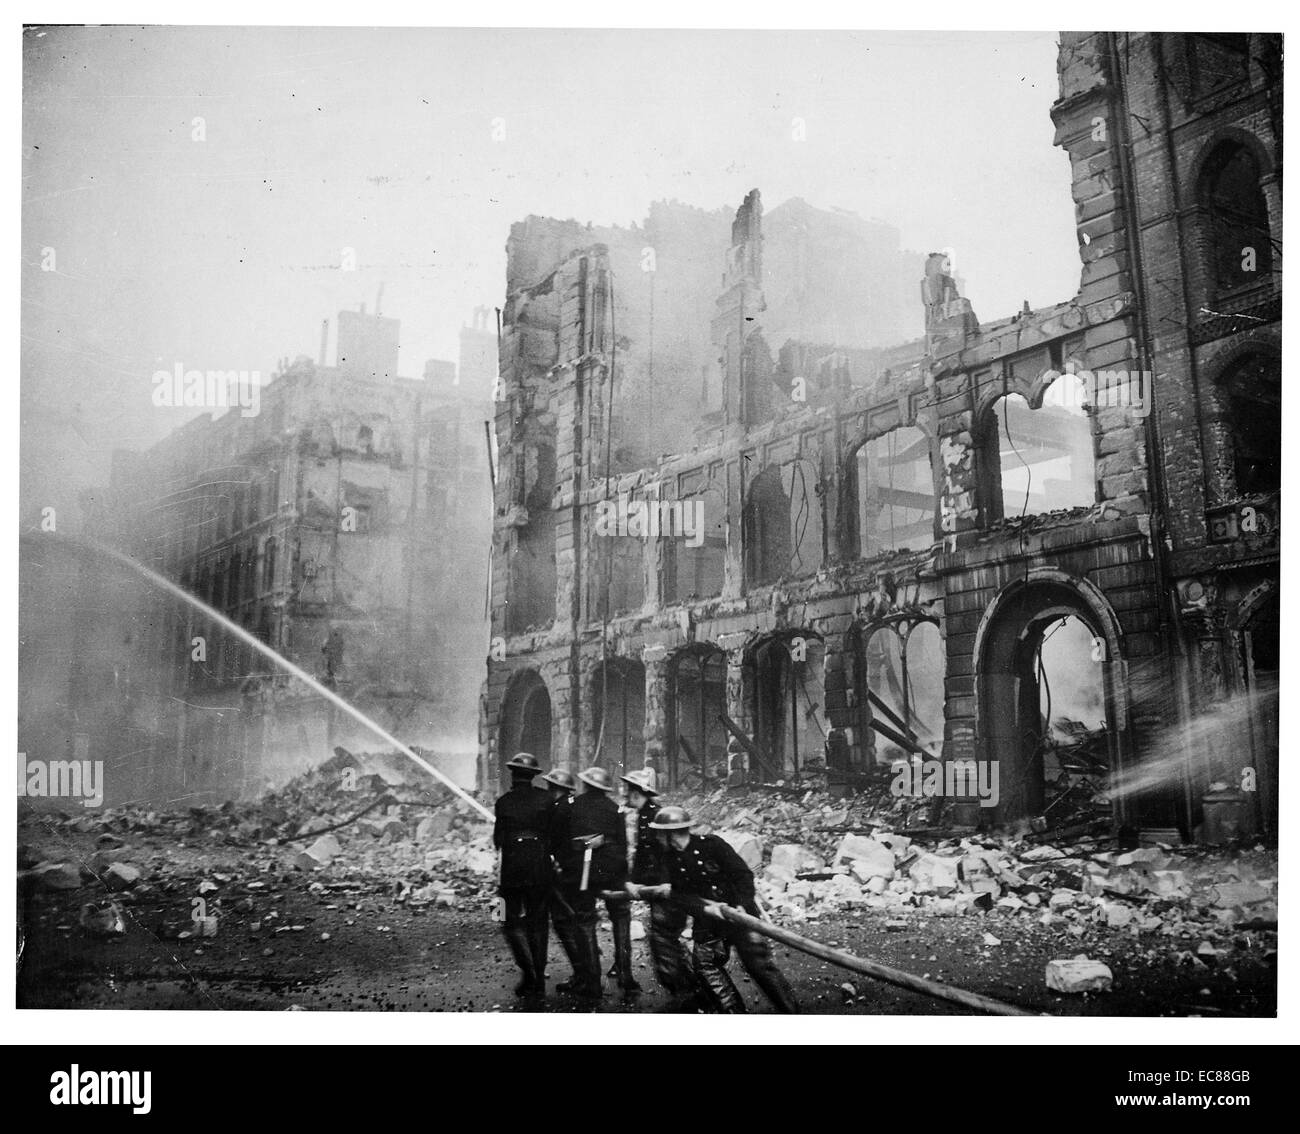 Foto von Feuerwehrleuten, die Bekämpfung der Flammen bei den Bombenanschlägen in London (Blitz). Datiert 1941 Stockfoto